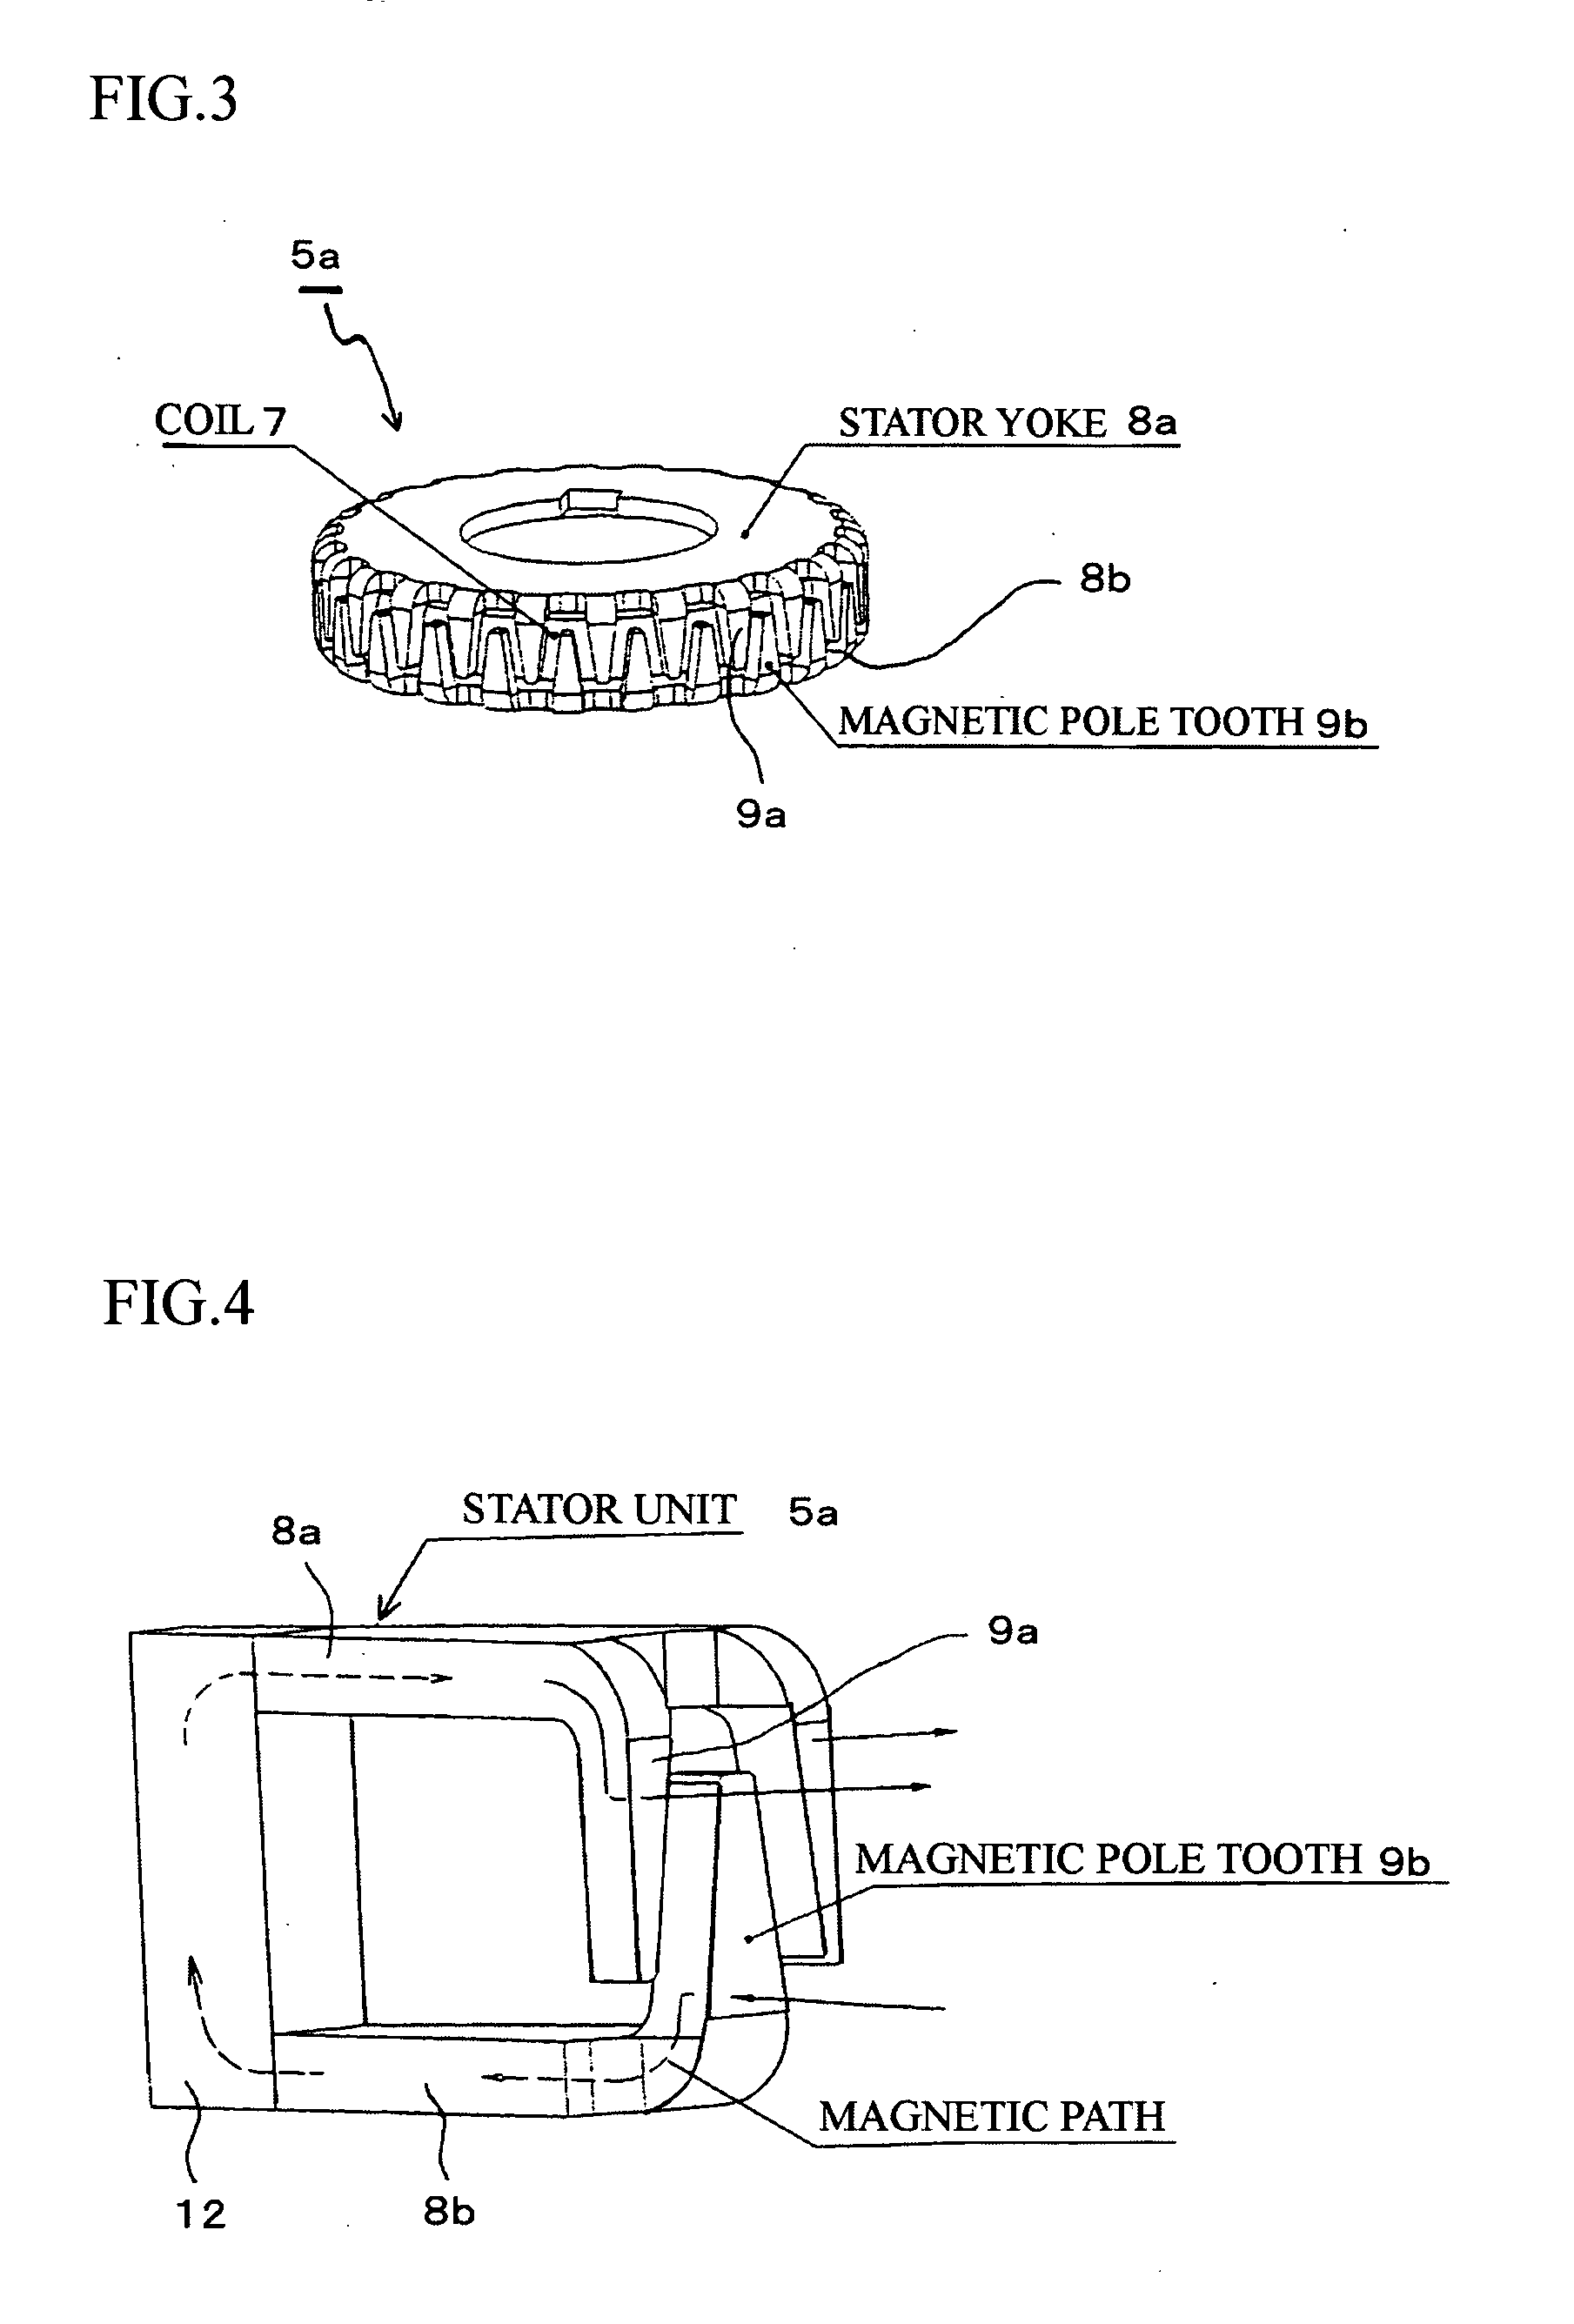 Permanent magnet type rotary machine